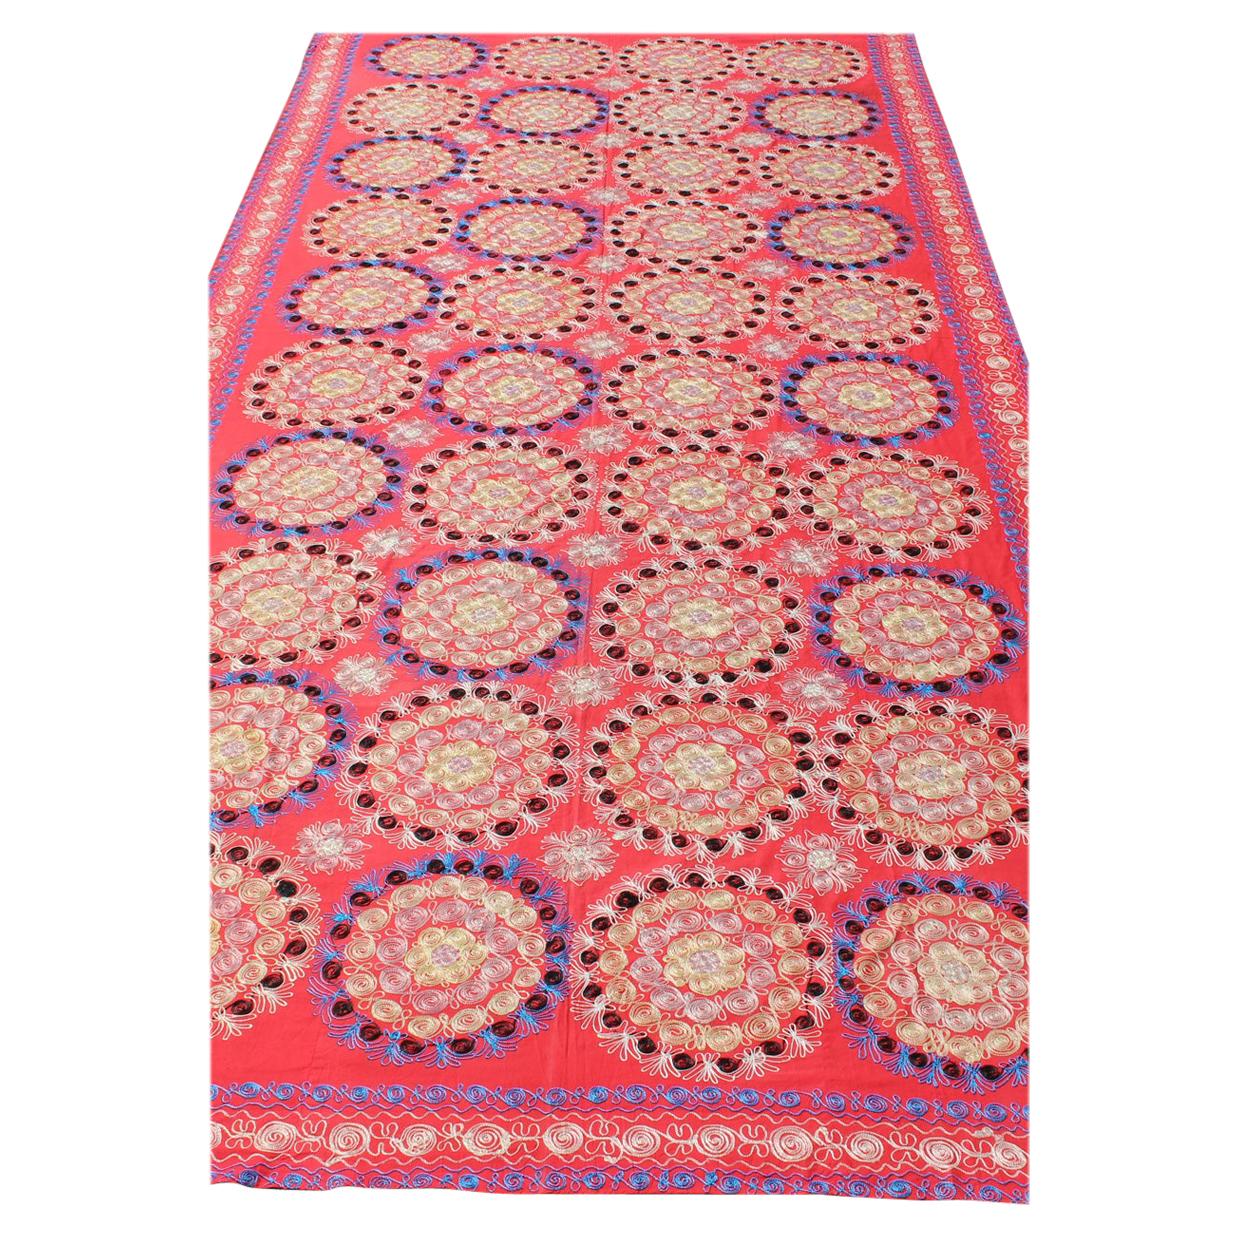 La broderie en soie Suzani est d'une taille inhabituelle, avec un rouge doux et de belles couleurs vives